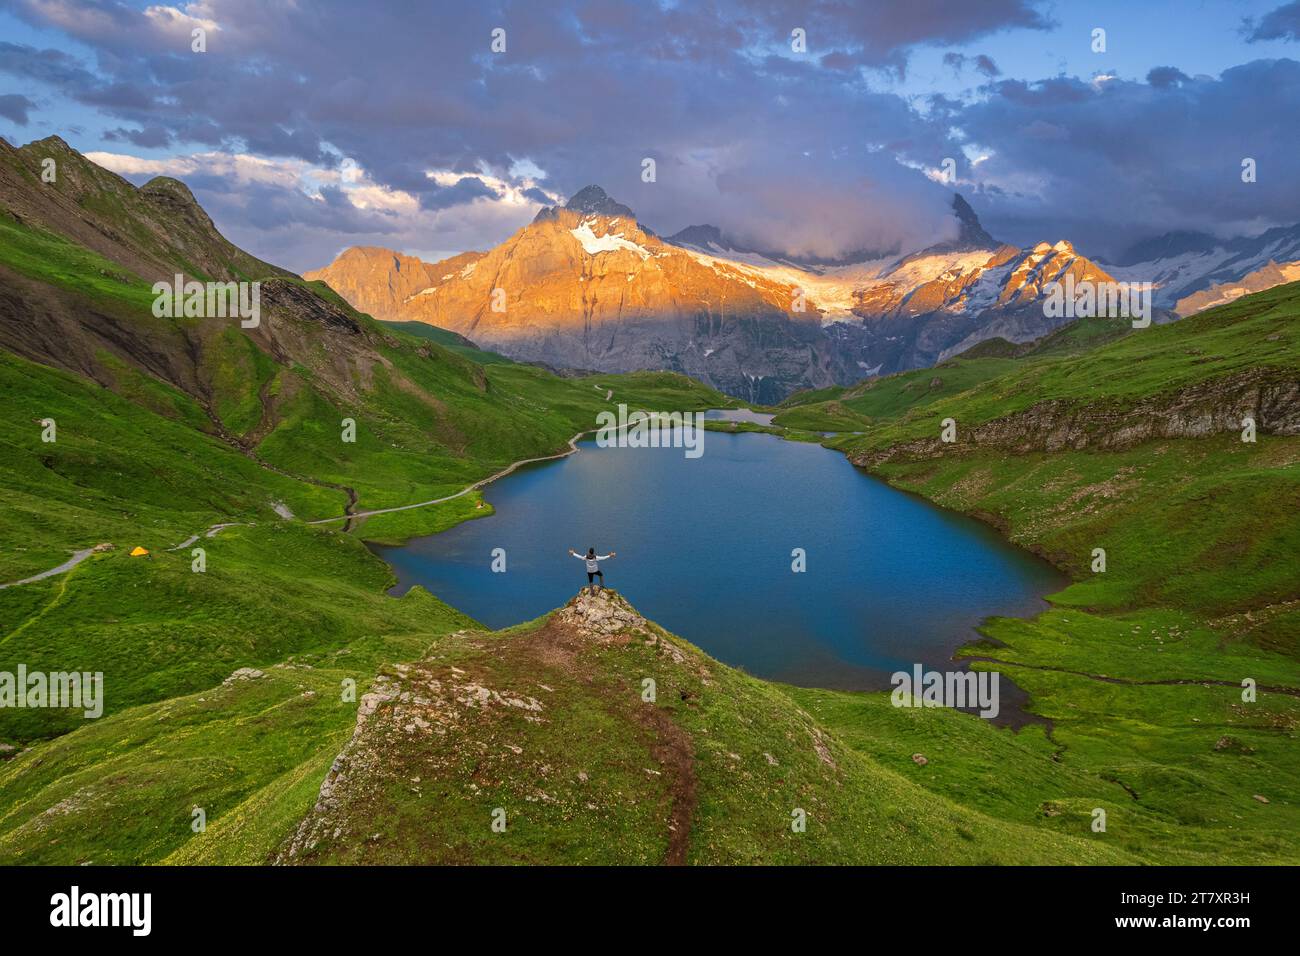 Joyeux randonneur surplombant Bachalpseee admirant le coucher de soleil sur les montagnes de l'Oberland bernois, Grindelwald, canton de Berne, Suisse, Europe Banque D'Images